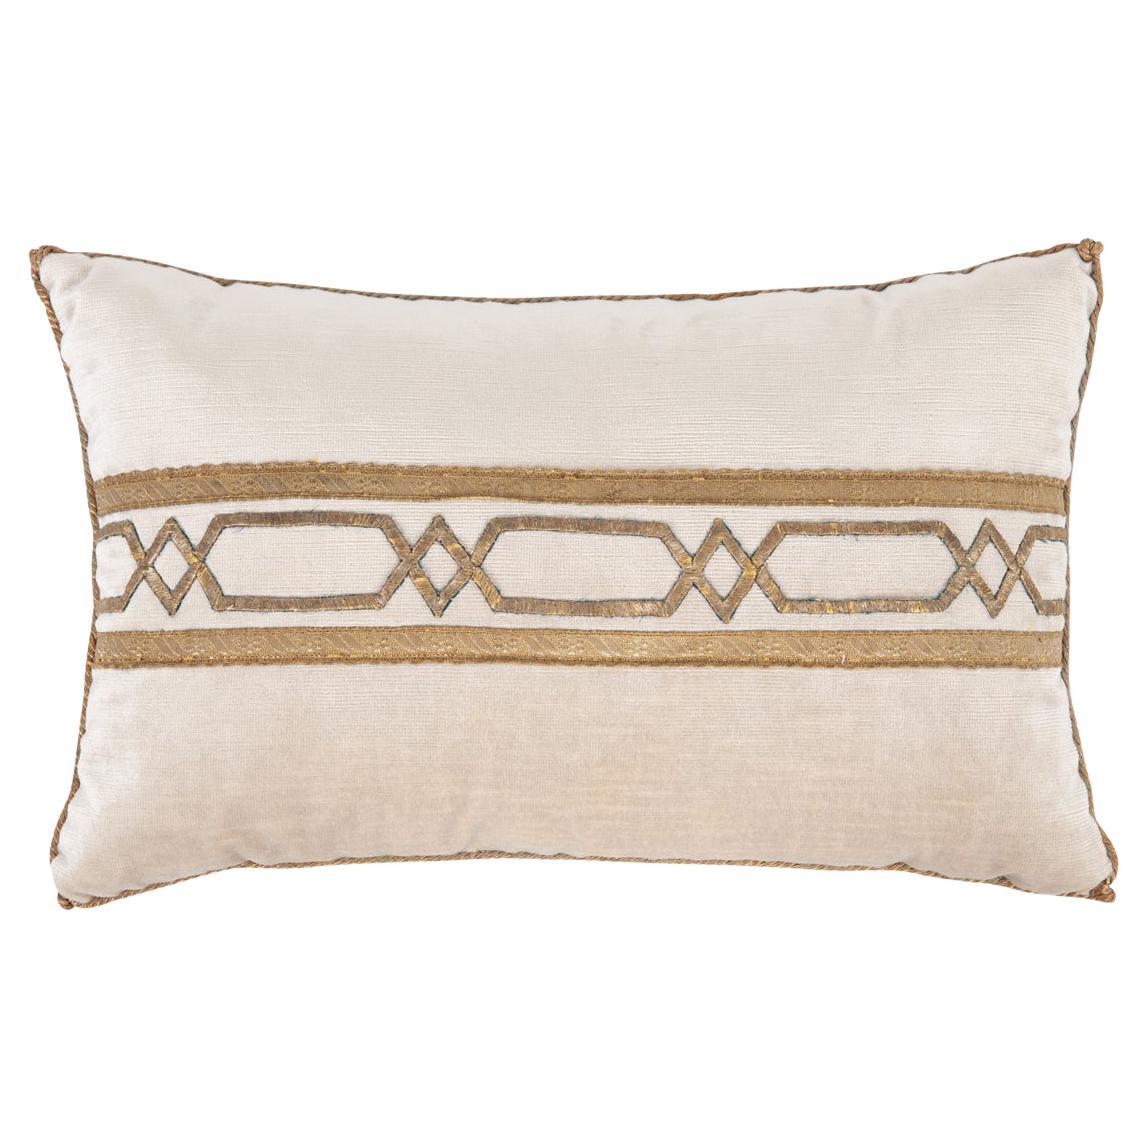 B. Viz Antique Textile Pillow For Sale